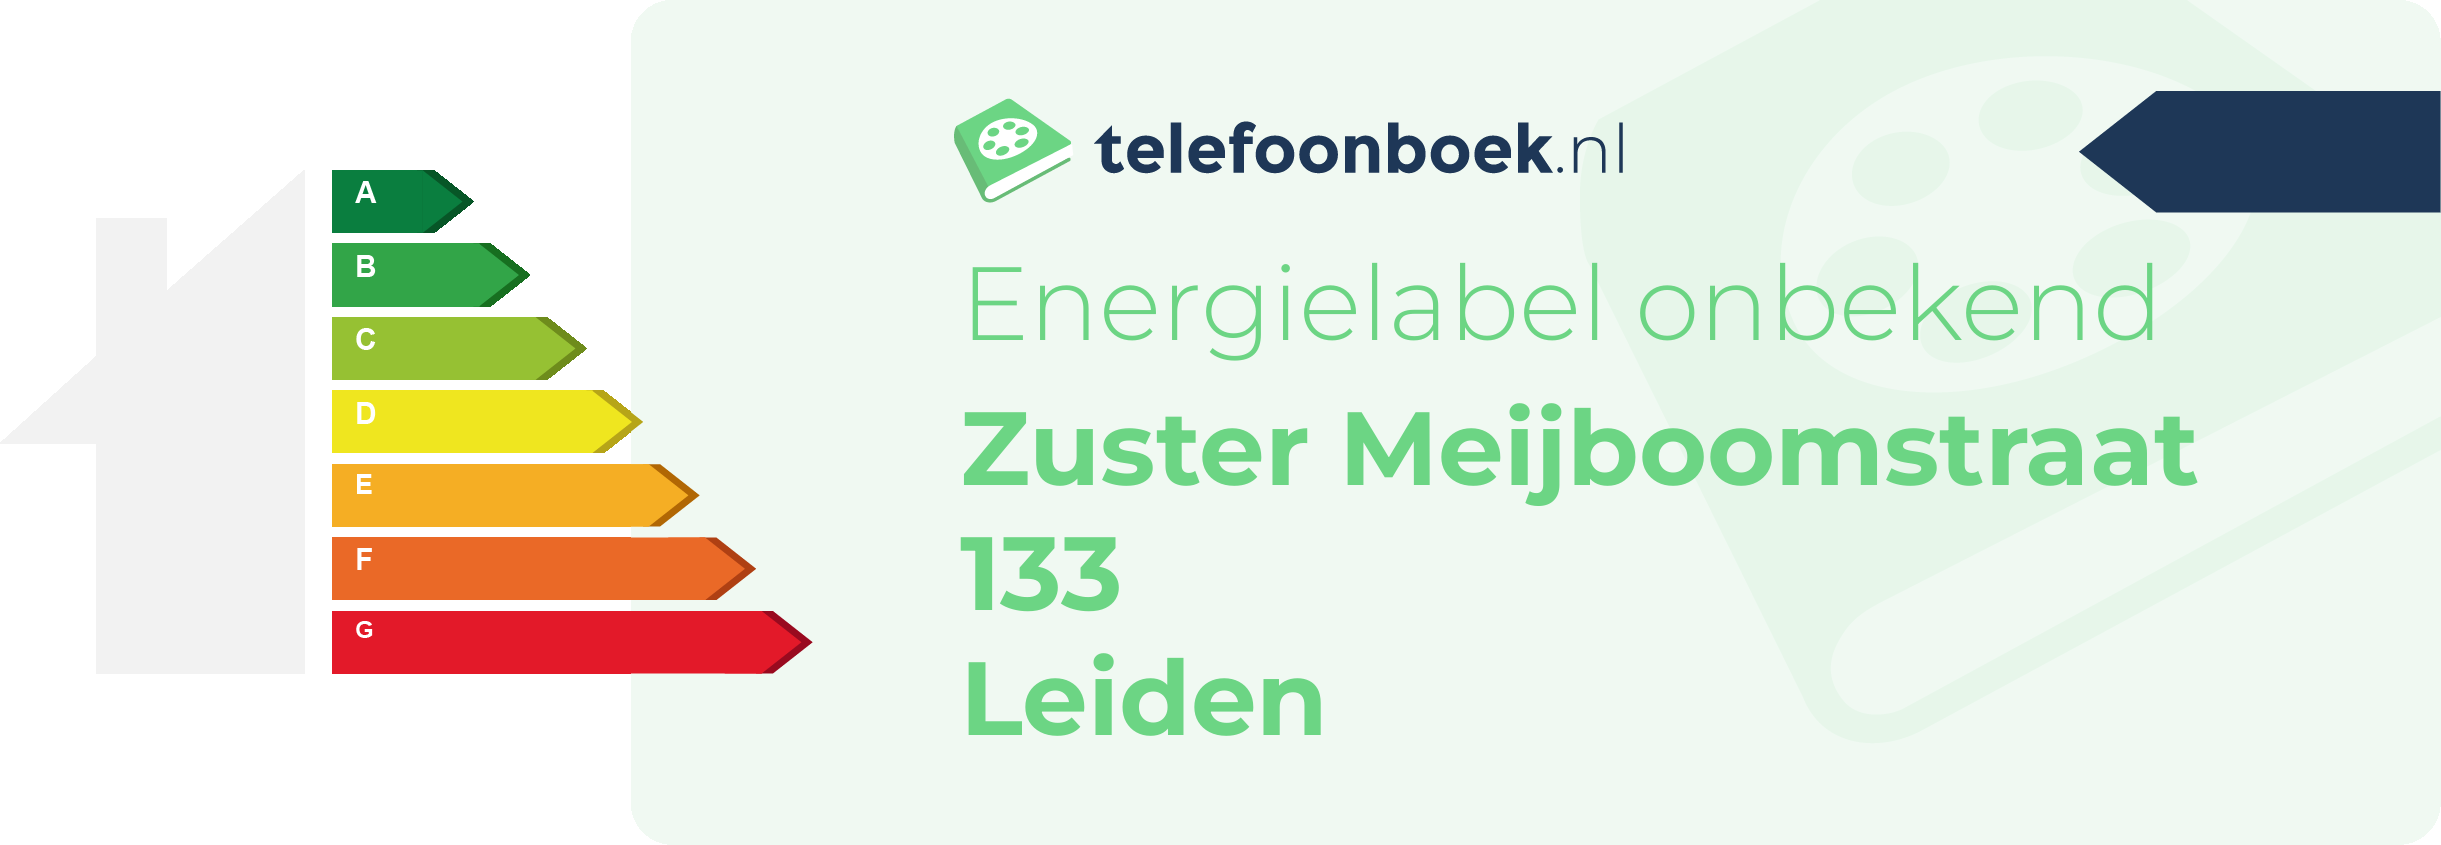 Energielabel Zuster Meijboomstraat 133 Leiden